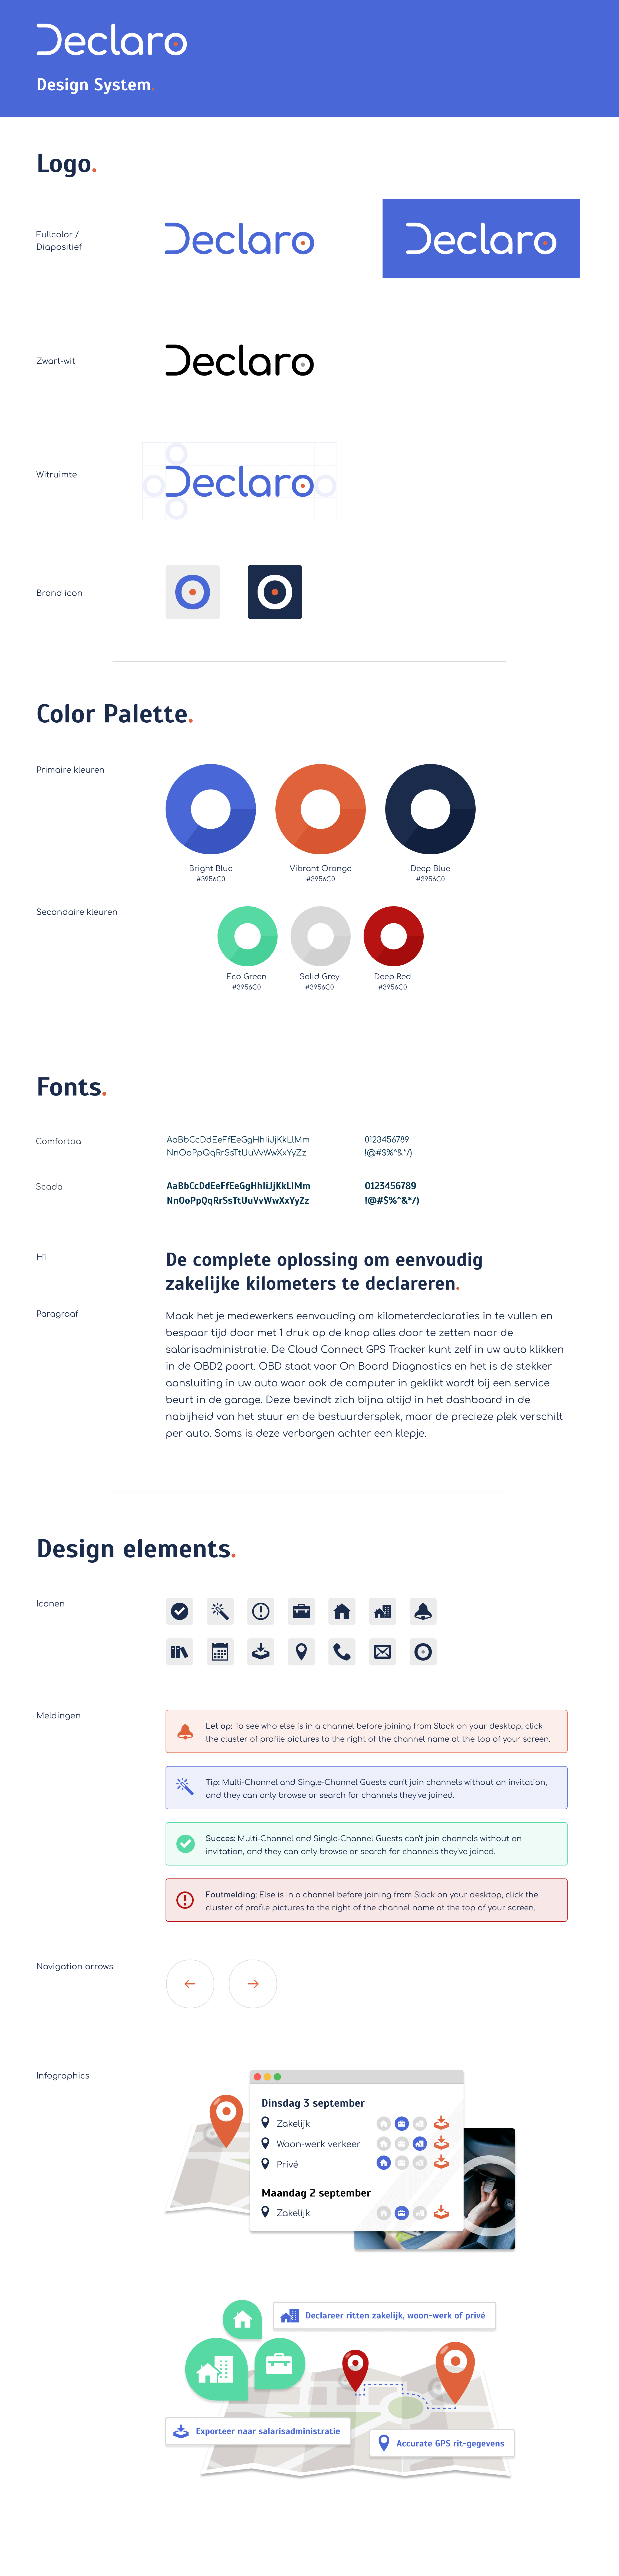 Declaro design system